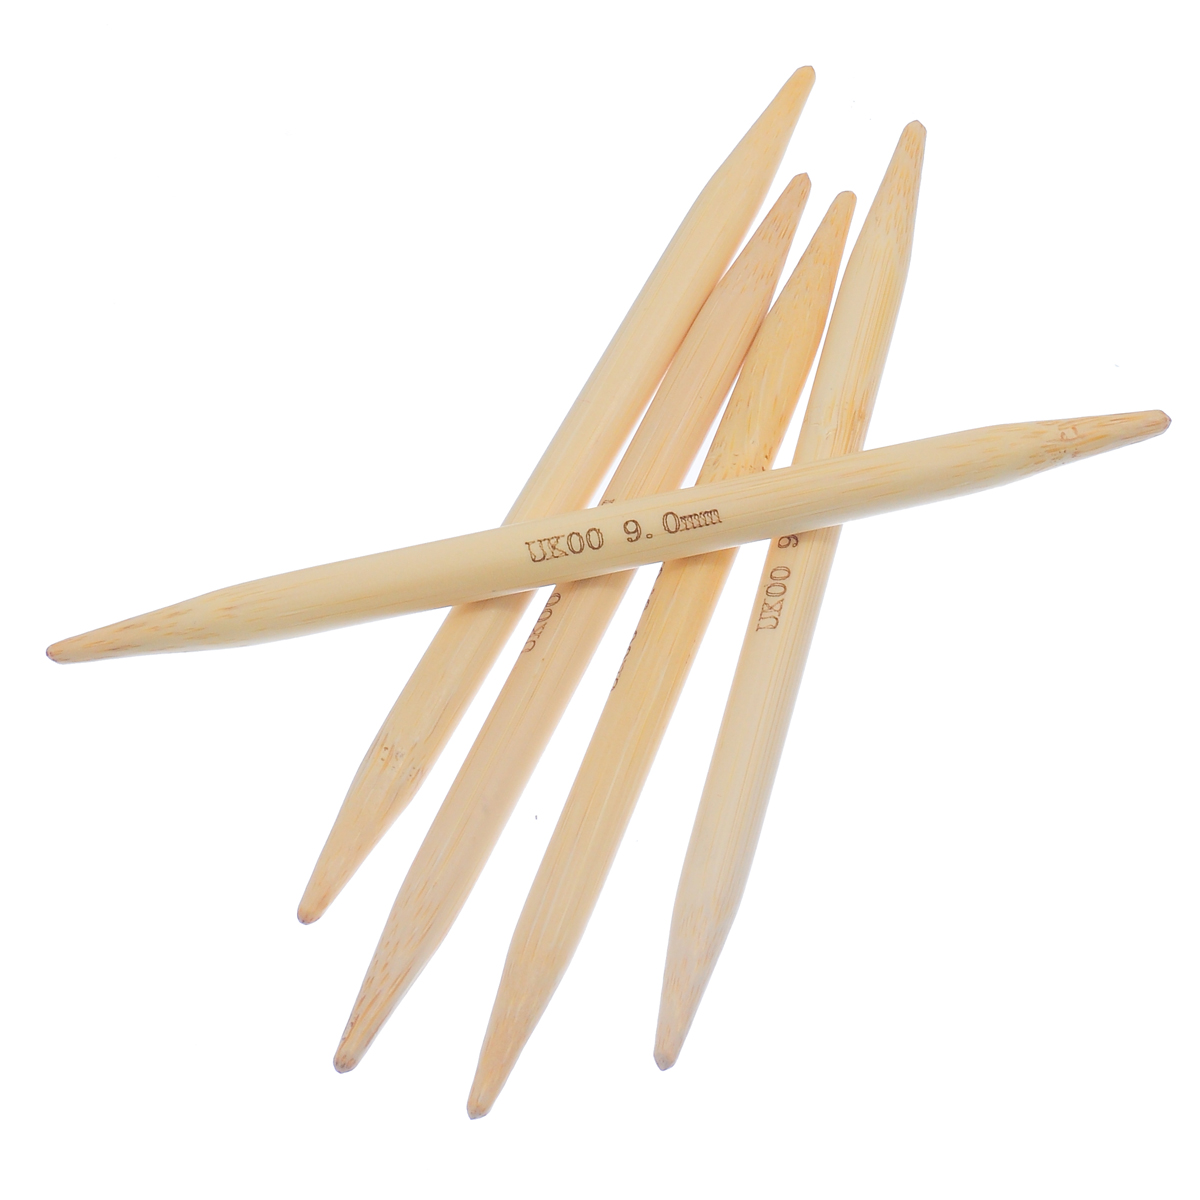 (UK00 9.0mm) 竹 ダブルポイント 編み針 ナチュラル 15cm 長さ、 1 セット ( 5 個/セット) の画像